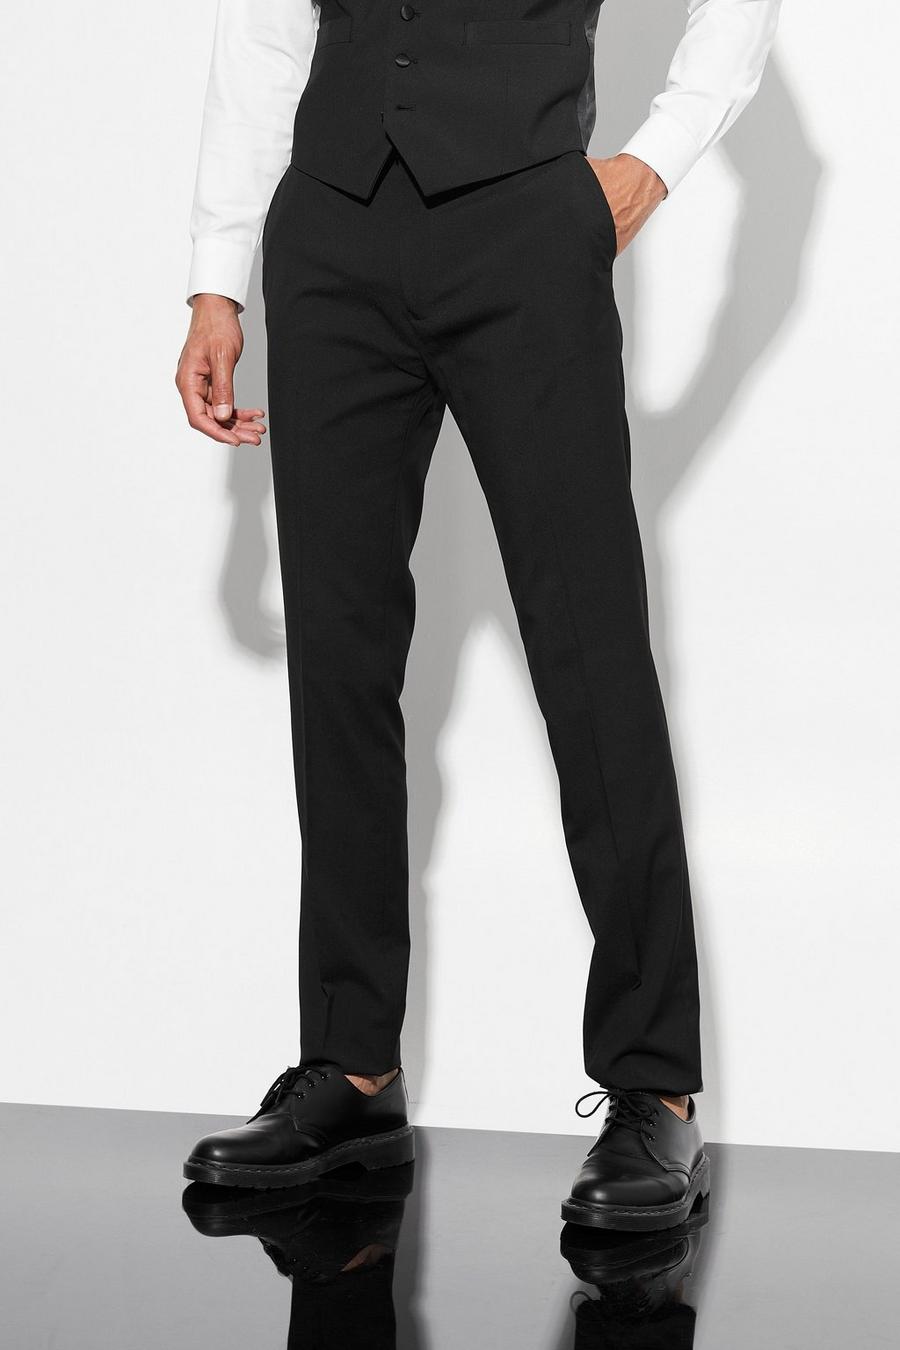 Black Tall Skinny Tuxedo Suit Trouser